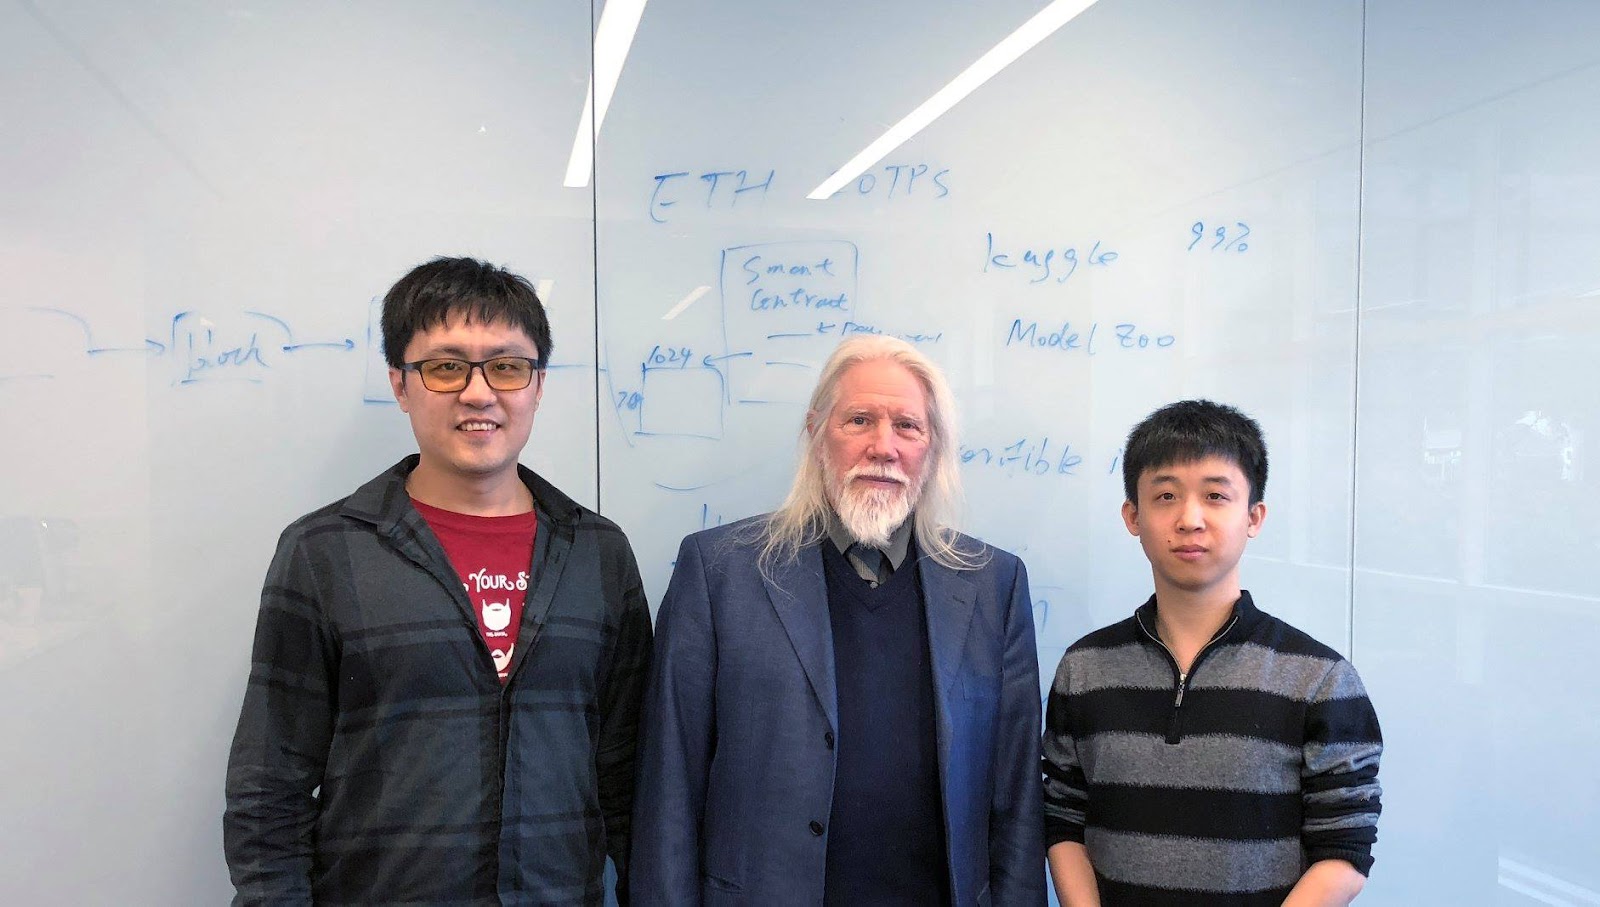 ภาพจากซ้ายไปกว่าได้แก่ Ziqi Chen CEO ของ Cortex Labs, ศาสตราจารย์ Whitfield Diffie และขวาสุดคือ Weiyang Wang CTO ของ Cortex Labs